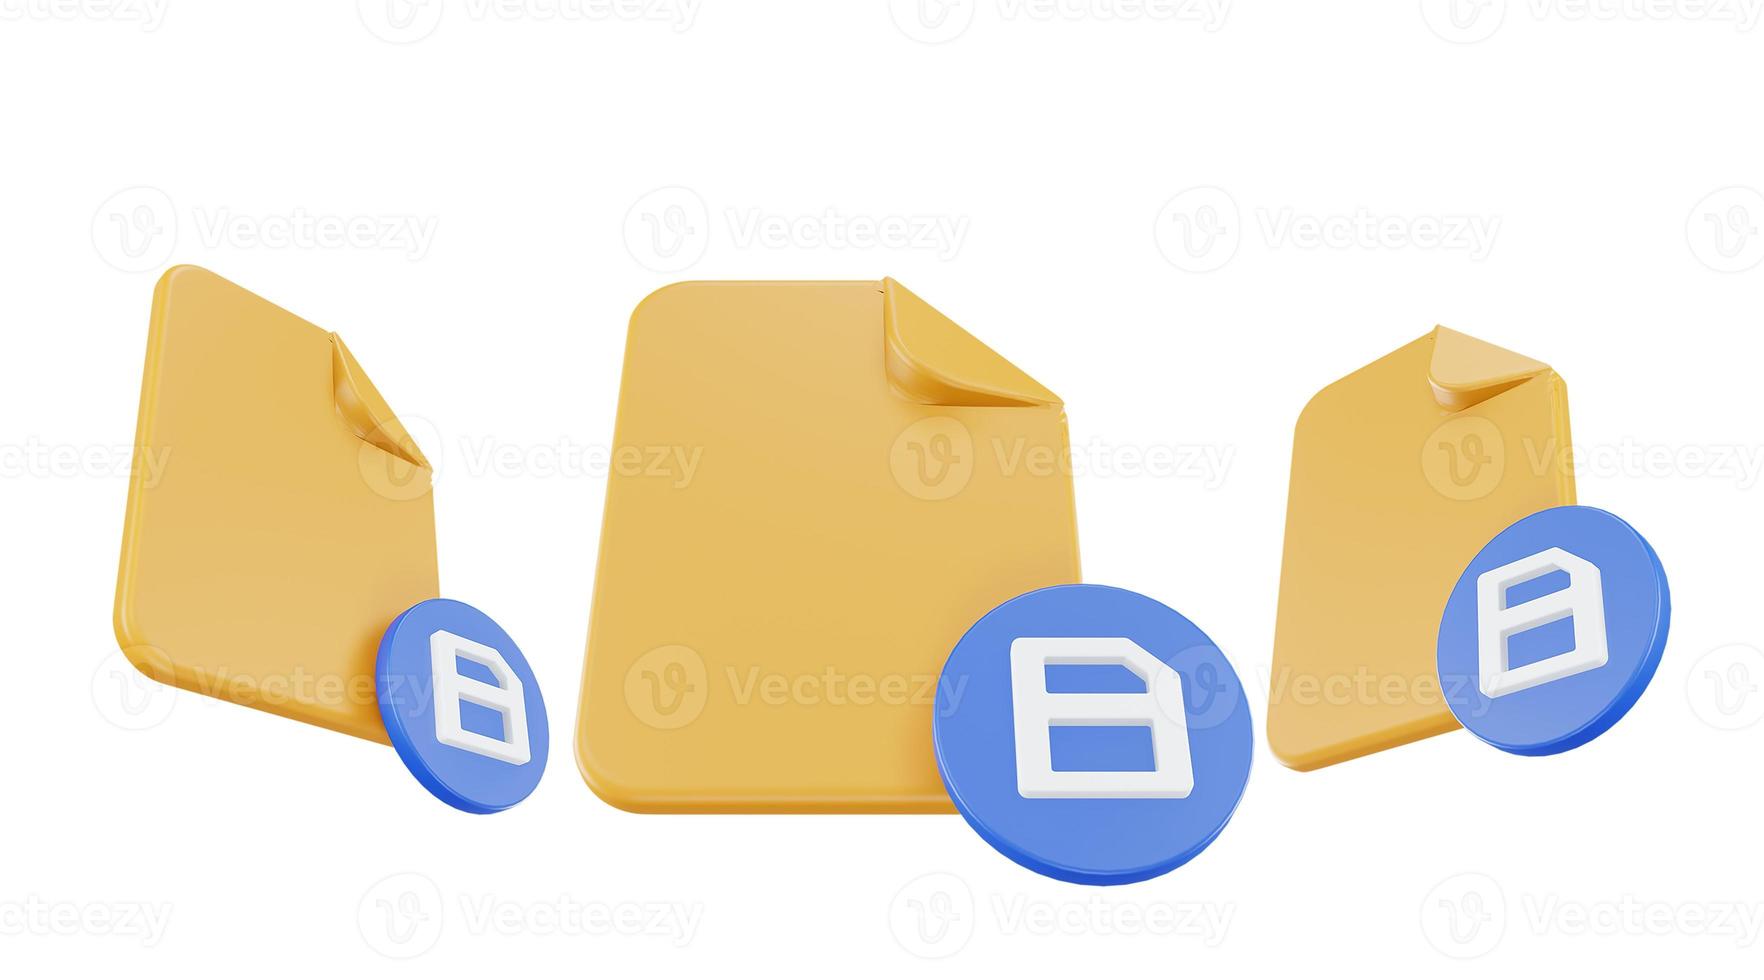 icône de sauvegarde de fichier de rendu 3d avec papier de fichier orange et sauvegarde bleue photo